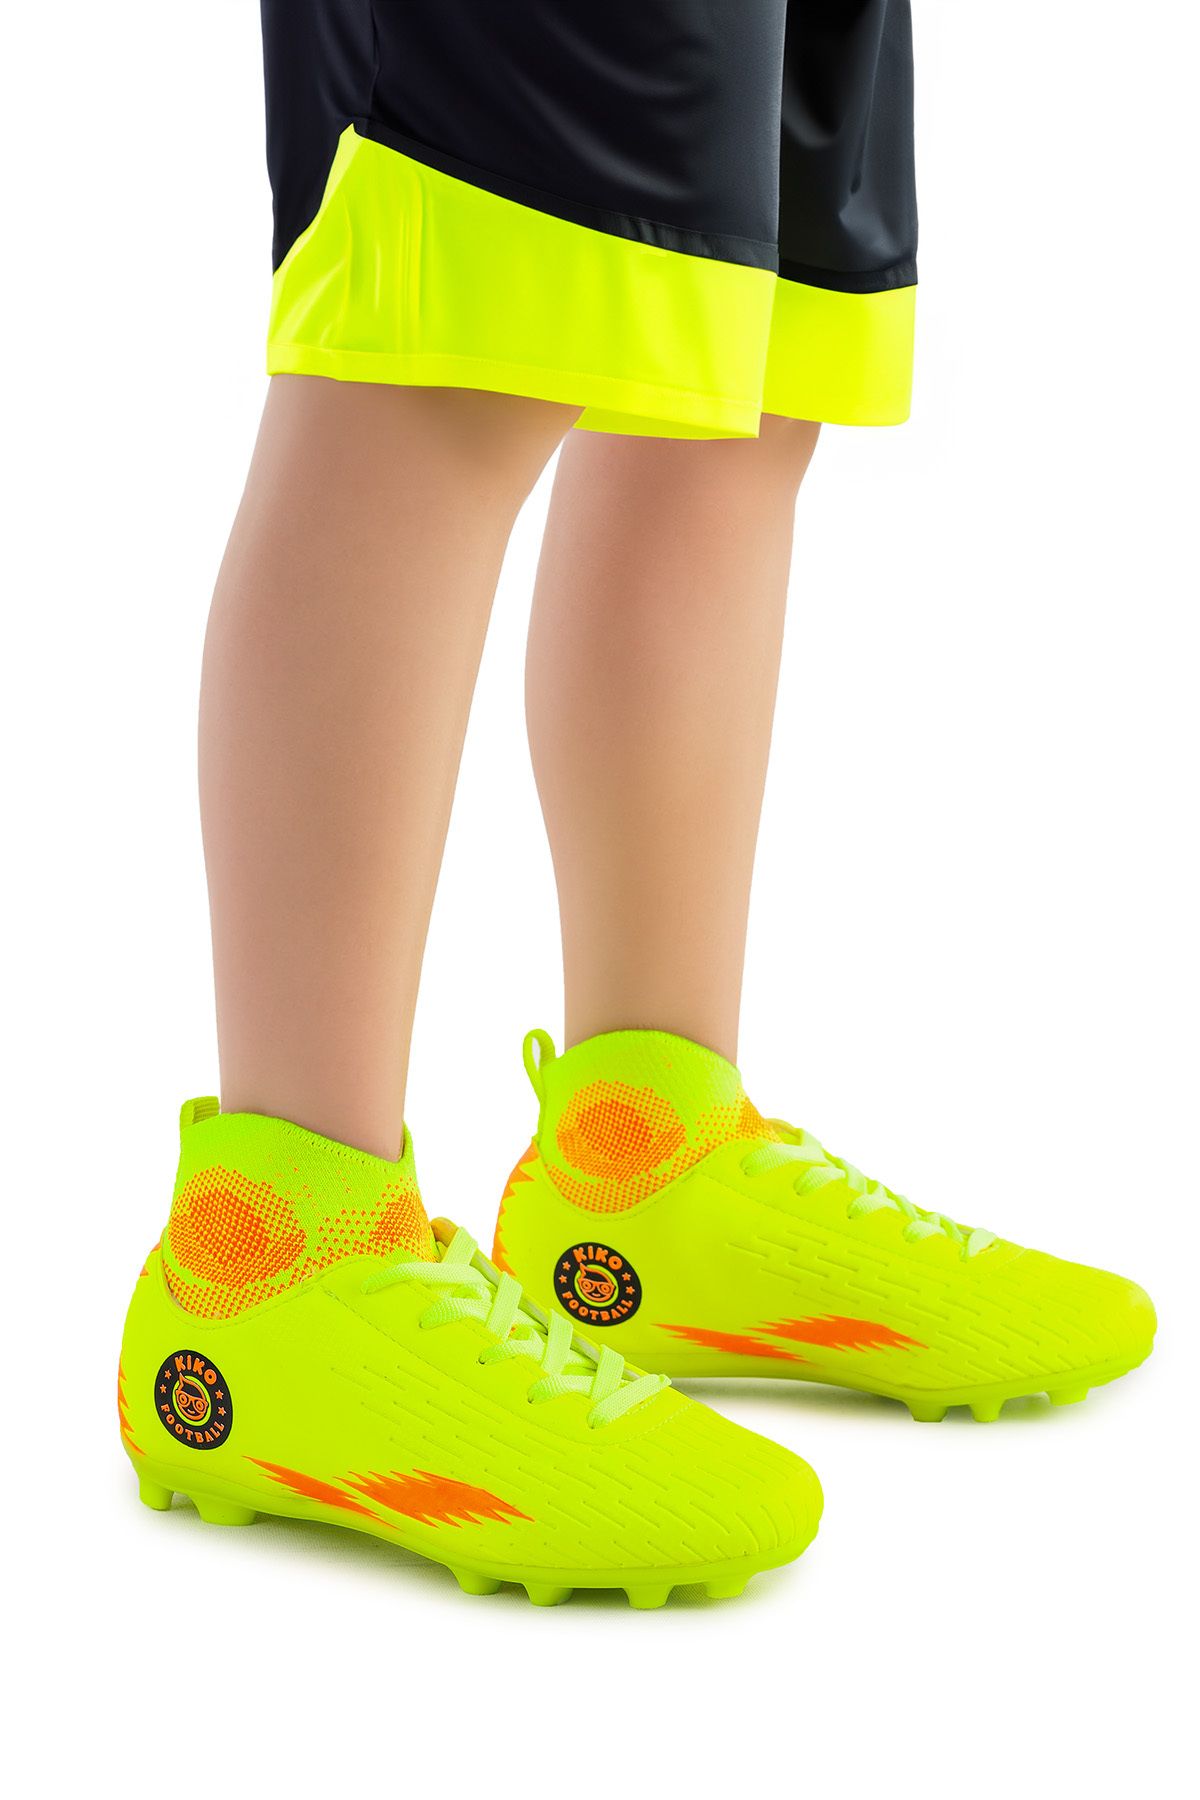 Kiko Kids 142 FKP Boğazlı Krampon Çim Saha Erkek Çocuk Futbol Ayakkabı